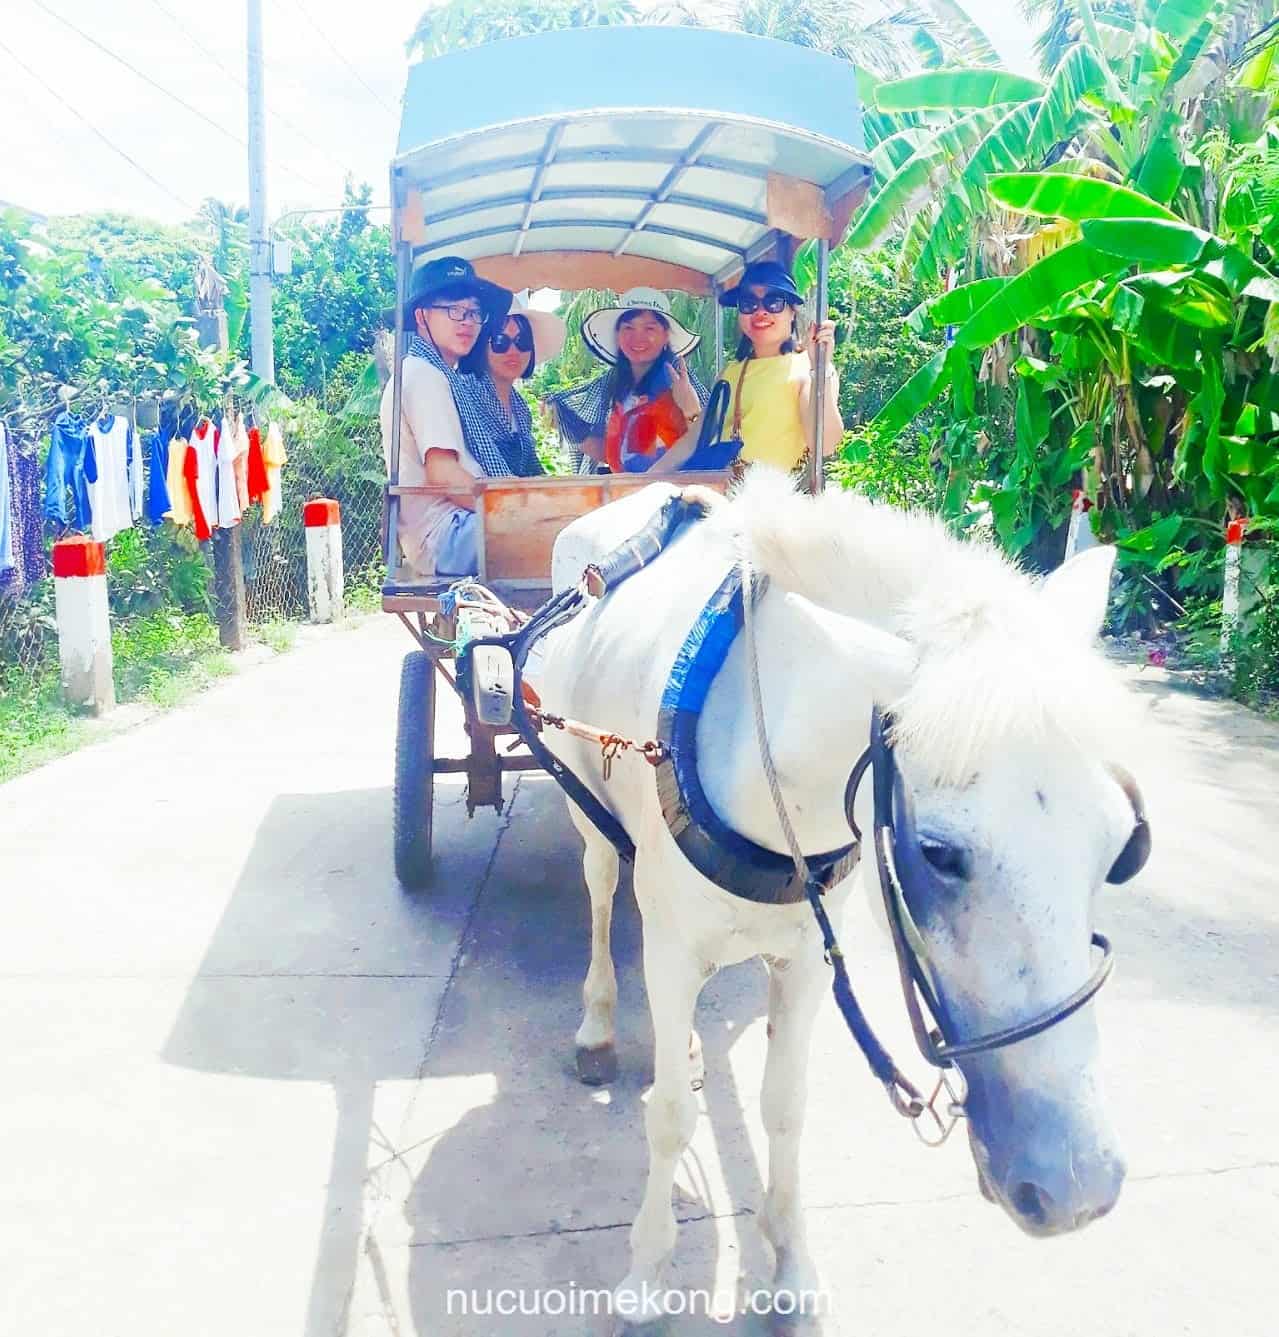 Trải nghiệm đi xe ngựa trong đường làng - tour Sài Gòn miền Tây 2 ngày 1 đêm